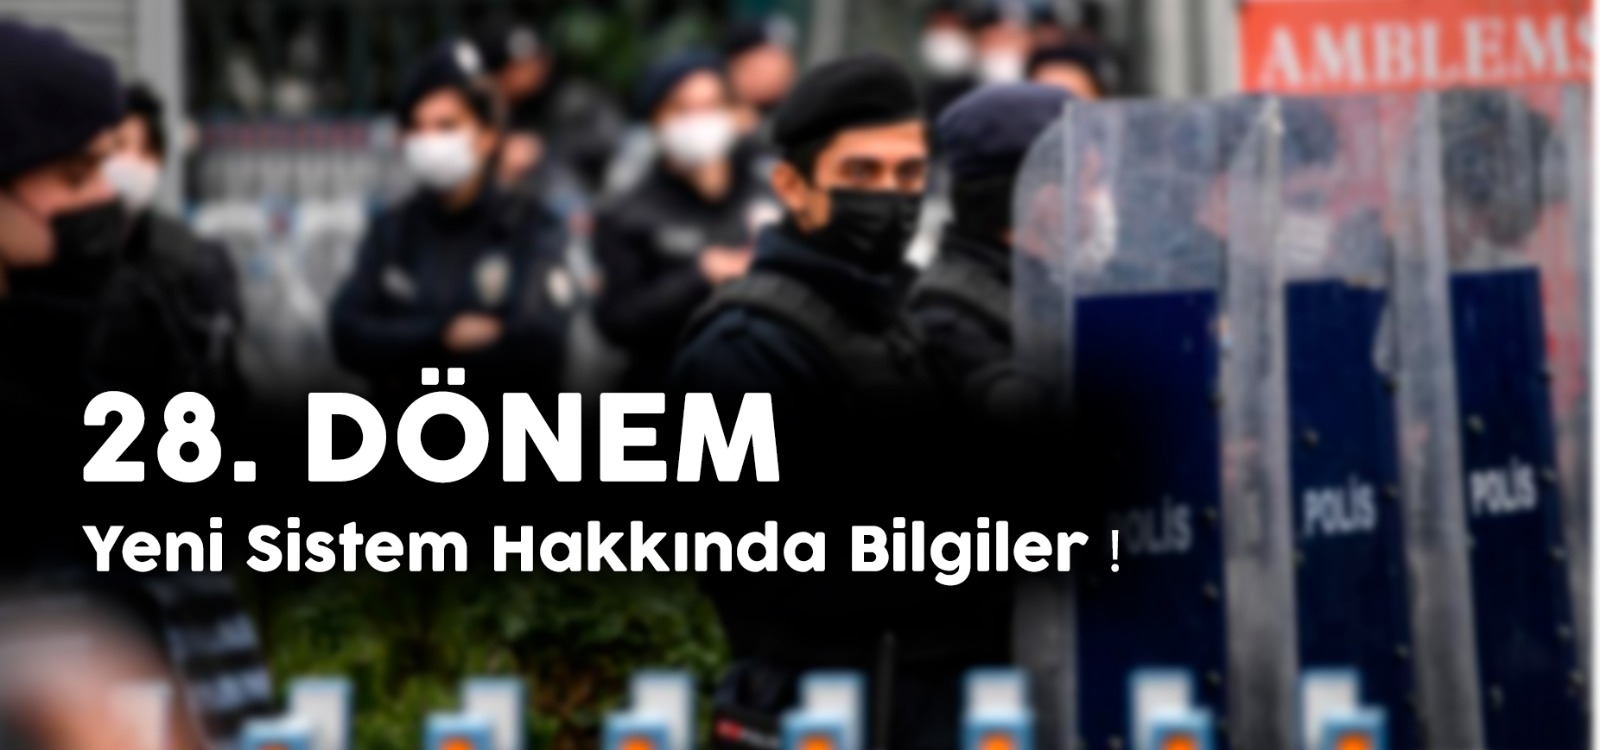  28. DÖNEM POLİS ALIMLARINDA DEĞİŞİKLİK HAKKINDA